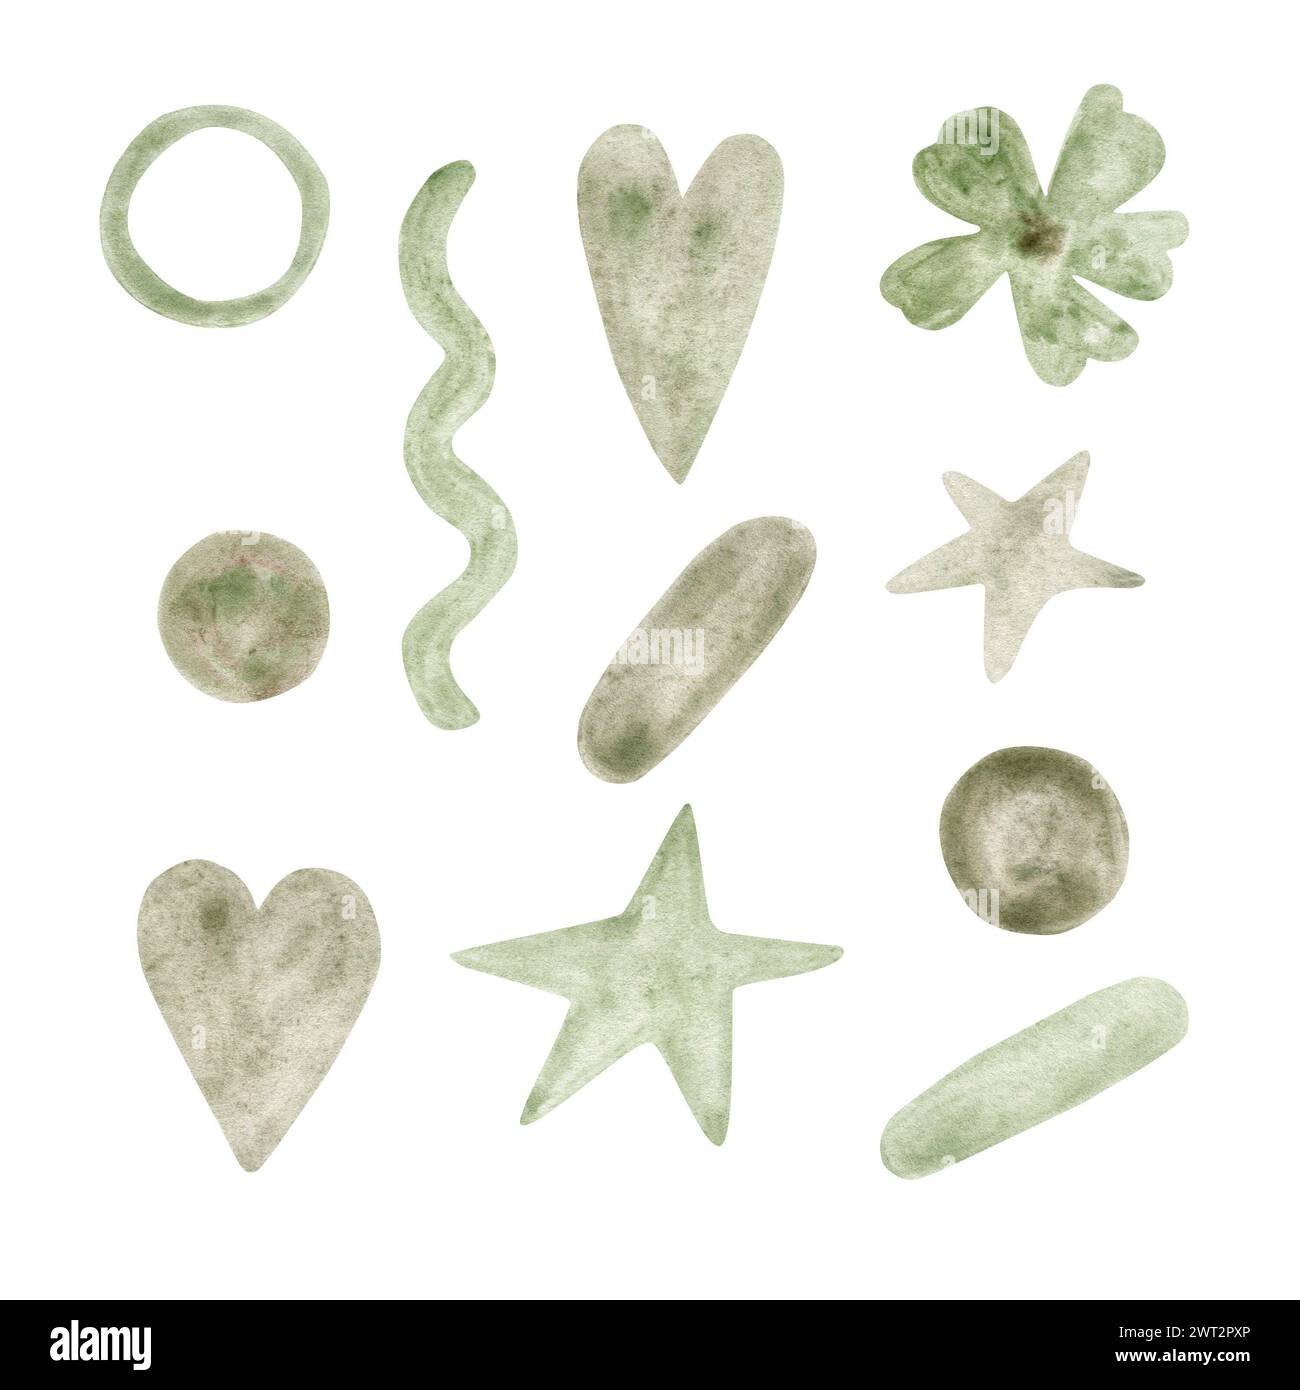 Aquarell hellgrüne abstrakte handgezeichnete Elemente für Ihr Design Stockfoto